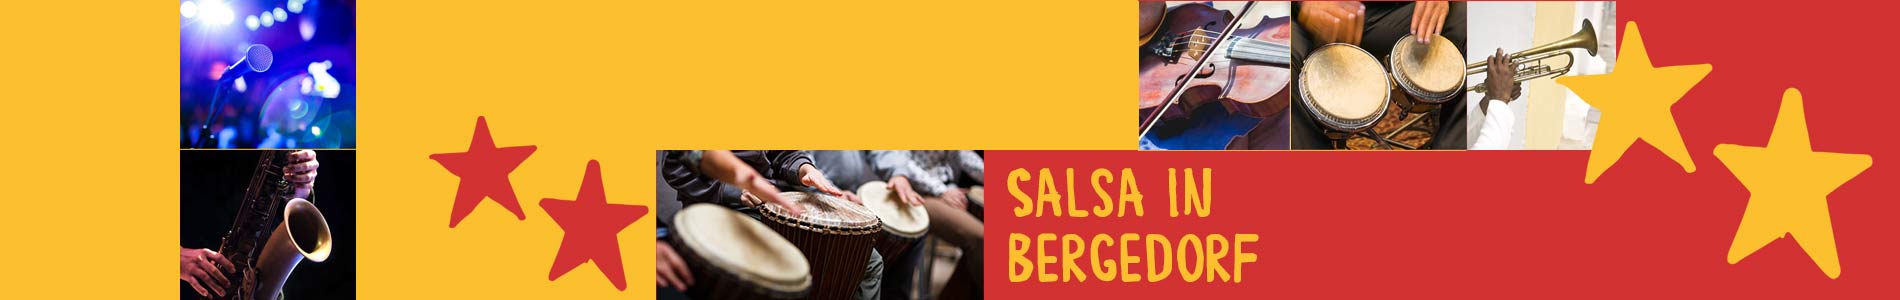 Salsa in Bergedorf – Salsa lernen und tanzen, Tanzkurse, Partys, Veranstaltungen